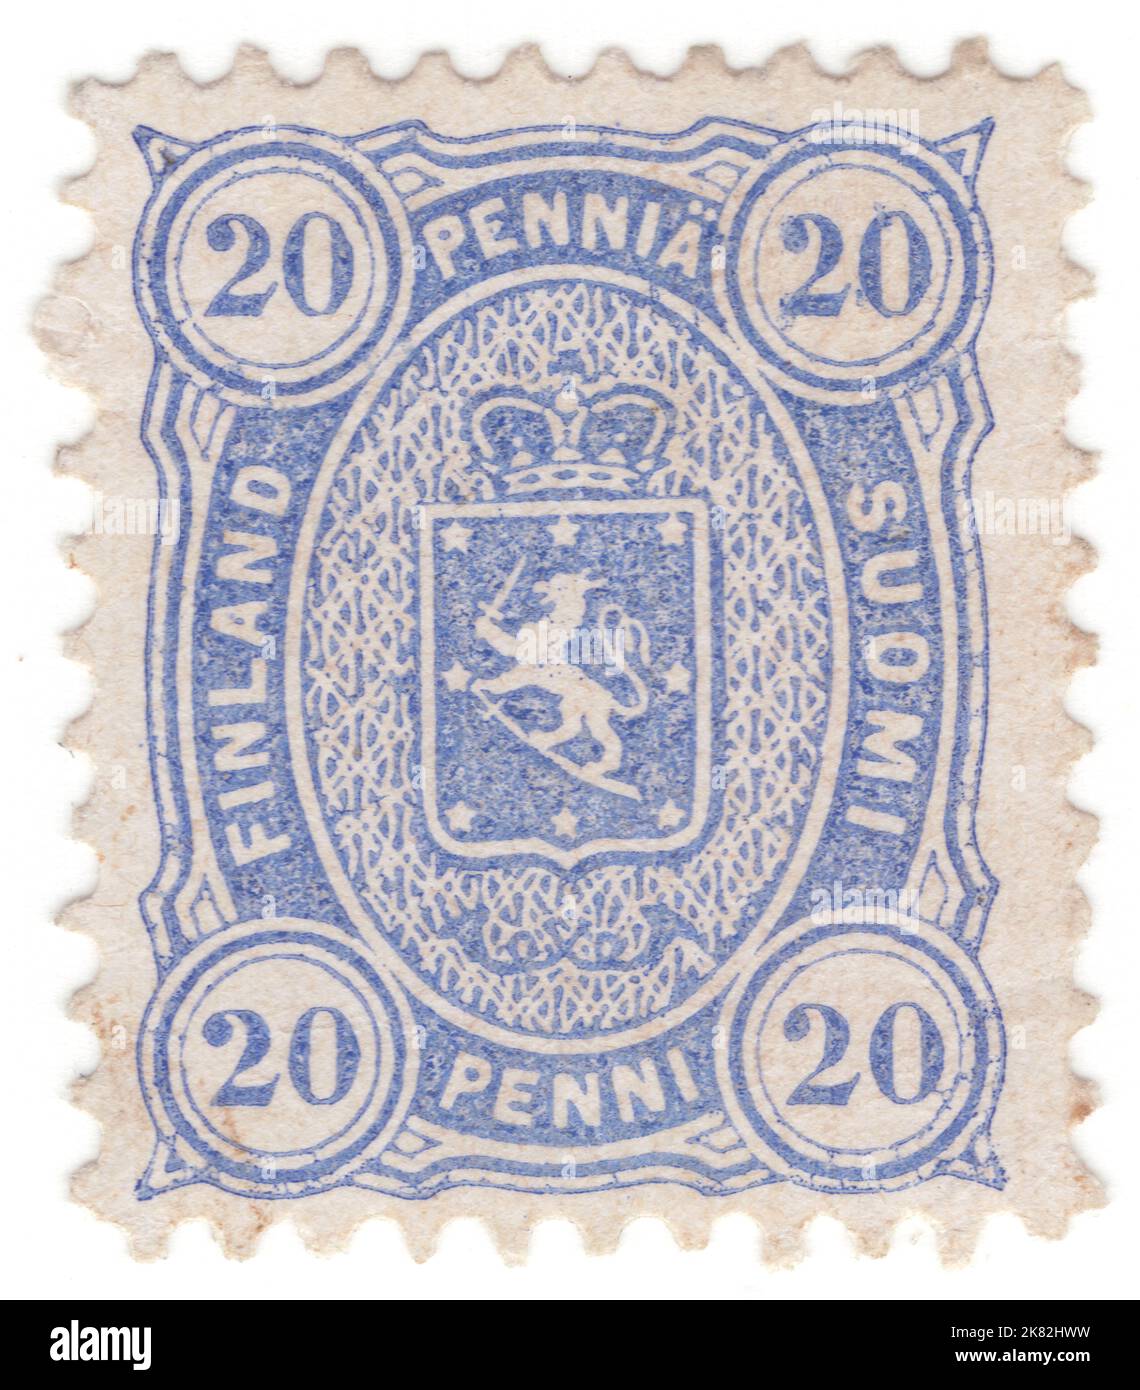 FINNLAND - 1875: Eine penni-ultramarine Briefmarke aus dem Jahr 20 mit Wappen und Posthörnern in ovalem Rahmen Stockfoto